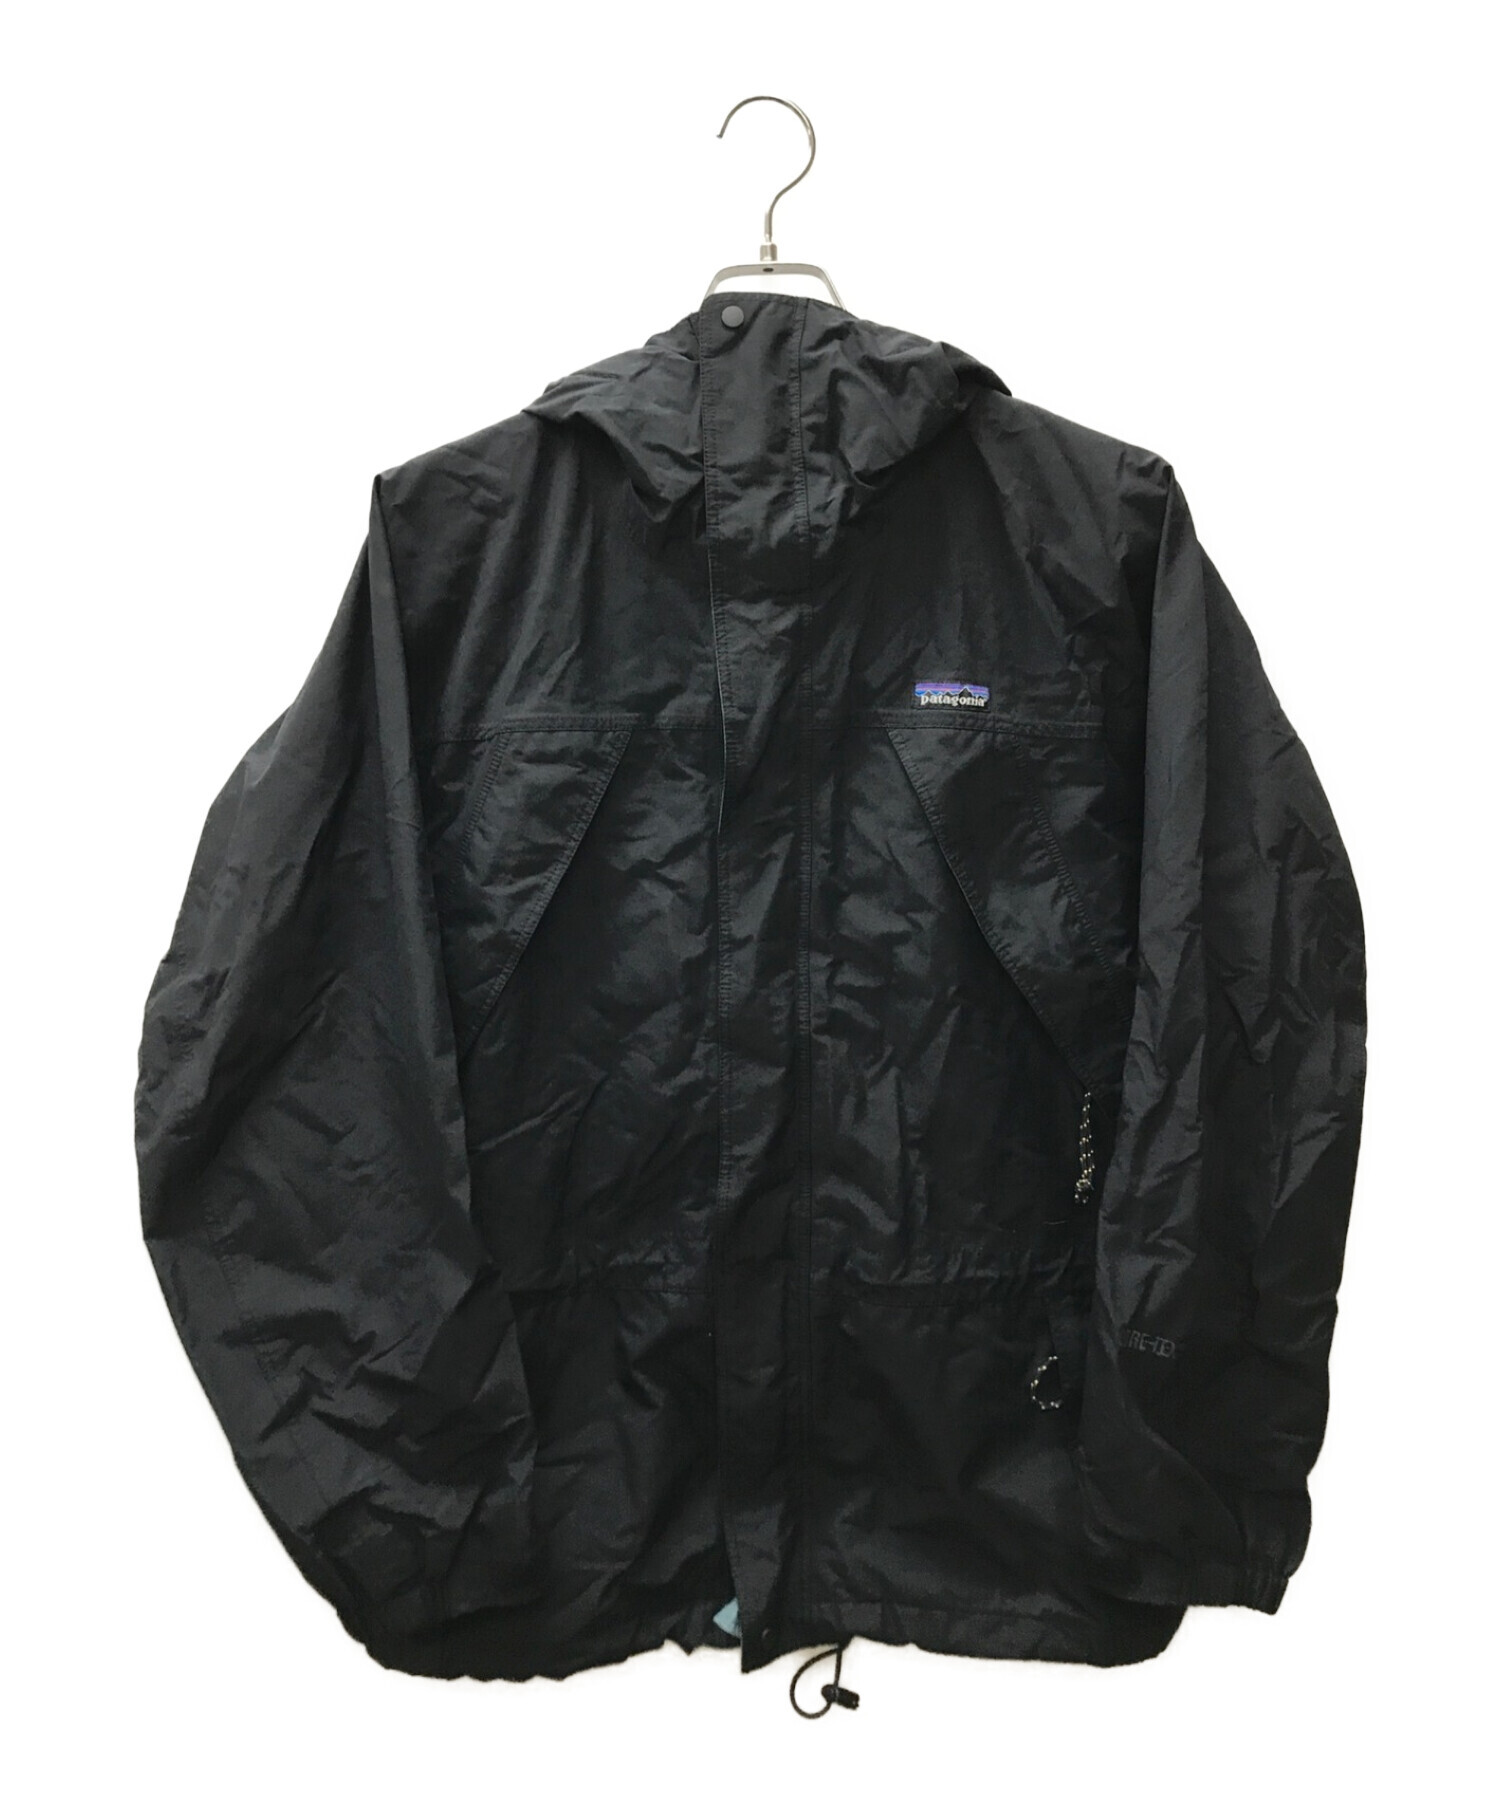 Patagonia (パタゴニア) STORM JACKET/ゴアテックスストームジャケット ブラック サイズ:S